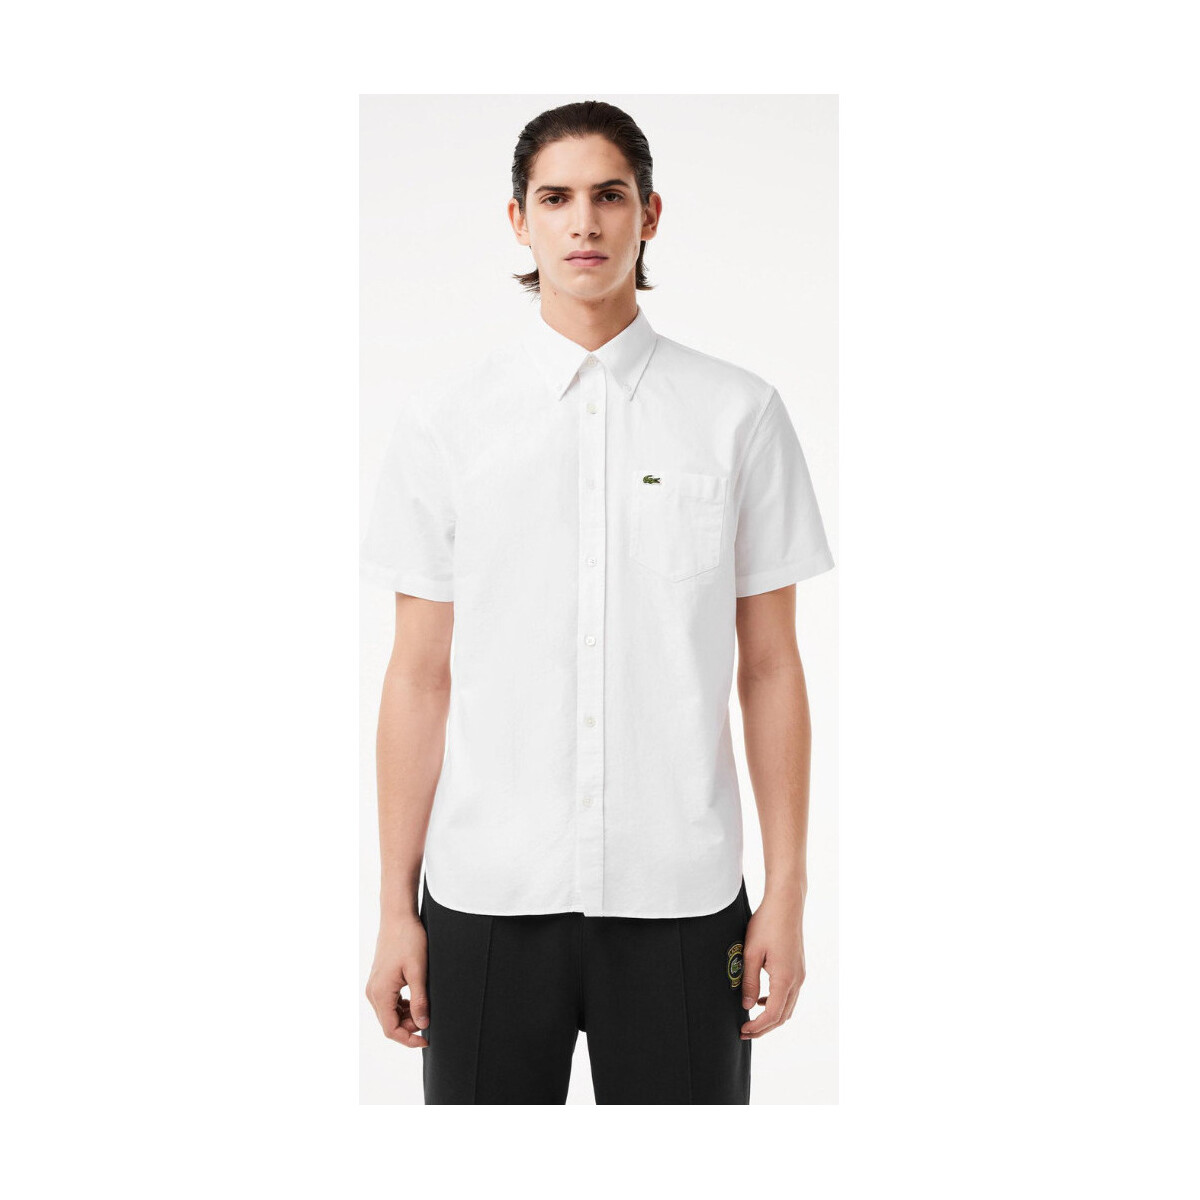 Vêtements Homme Chemises manches longues Lacoste Chemise manches courtes  blanche coton bio Blanc